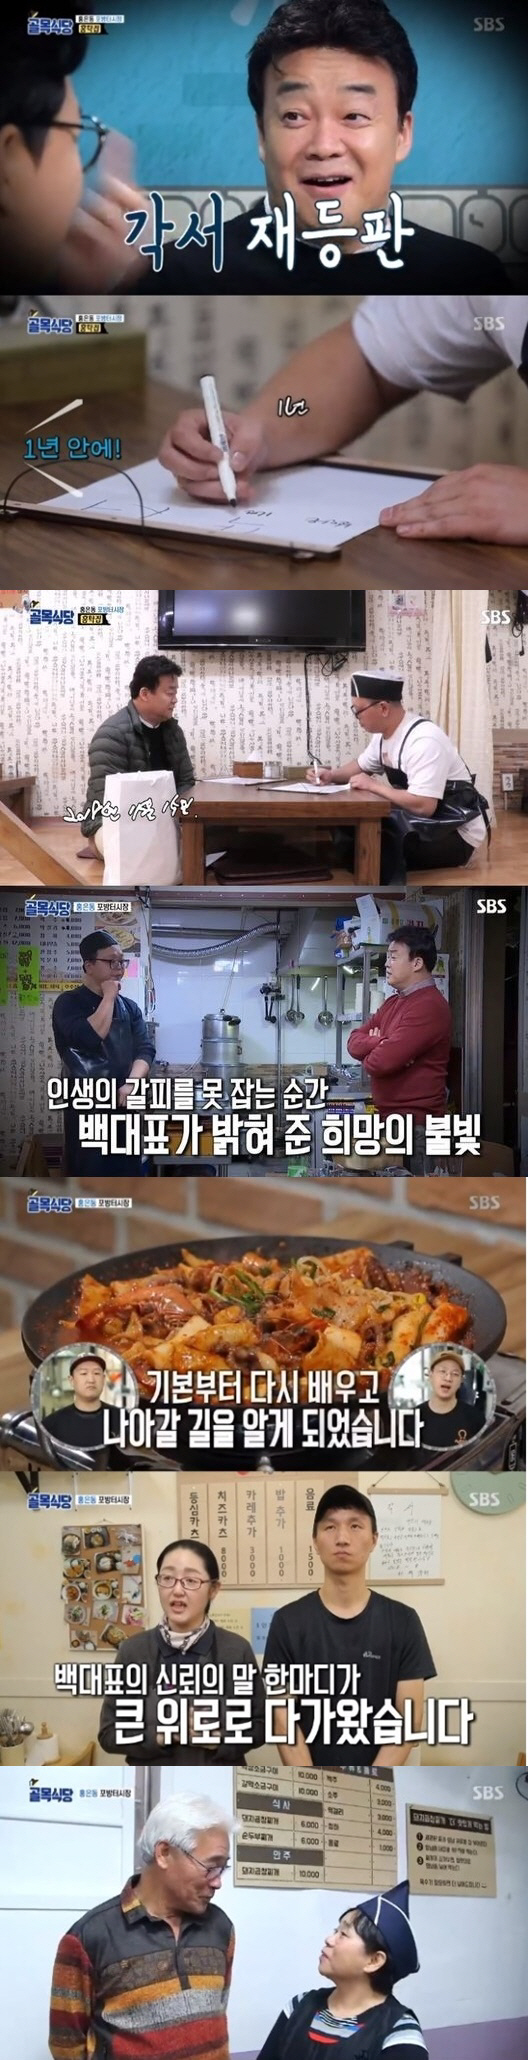 '골목식당' 홍탁집 아들의 환골탈태, 최고 시청률 '10.3%'